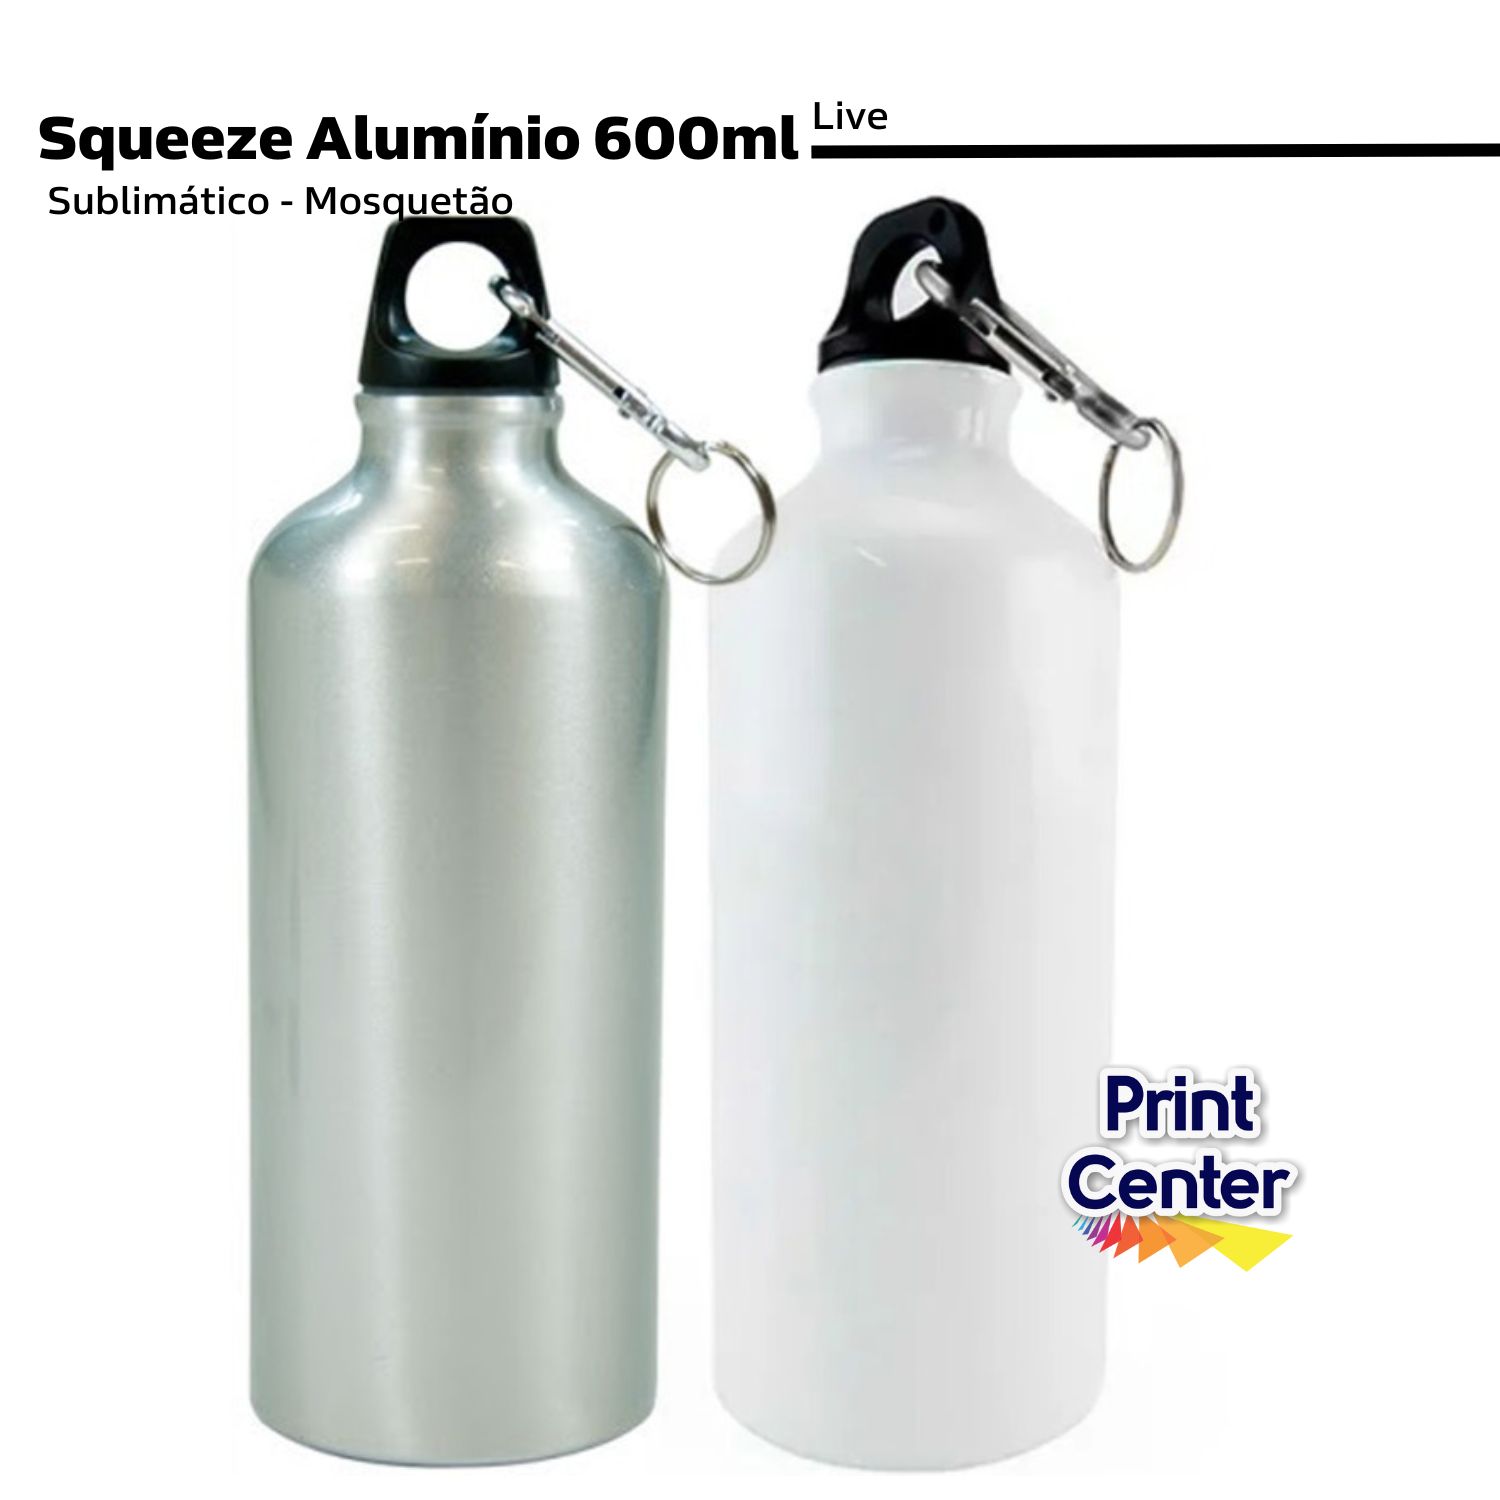 Squeeze Alumínio p/ Sublimação 600ml - Mosquetão Kit c/ 6 unidades